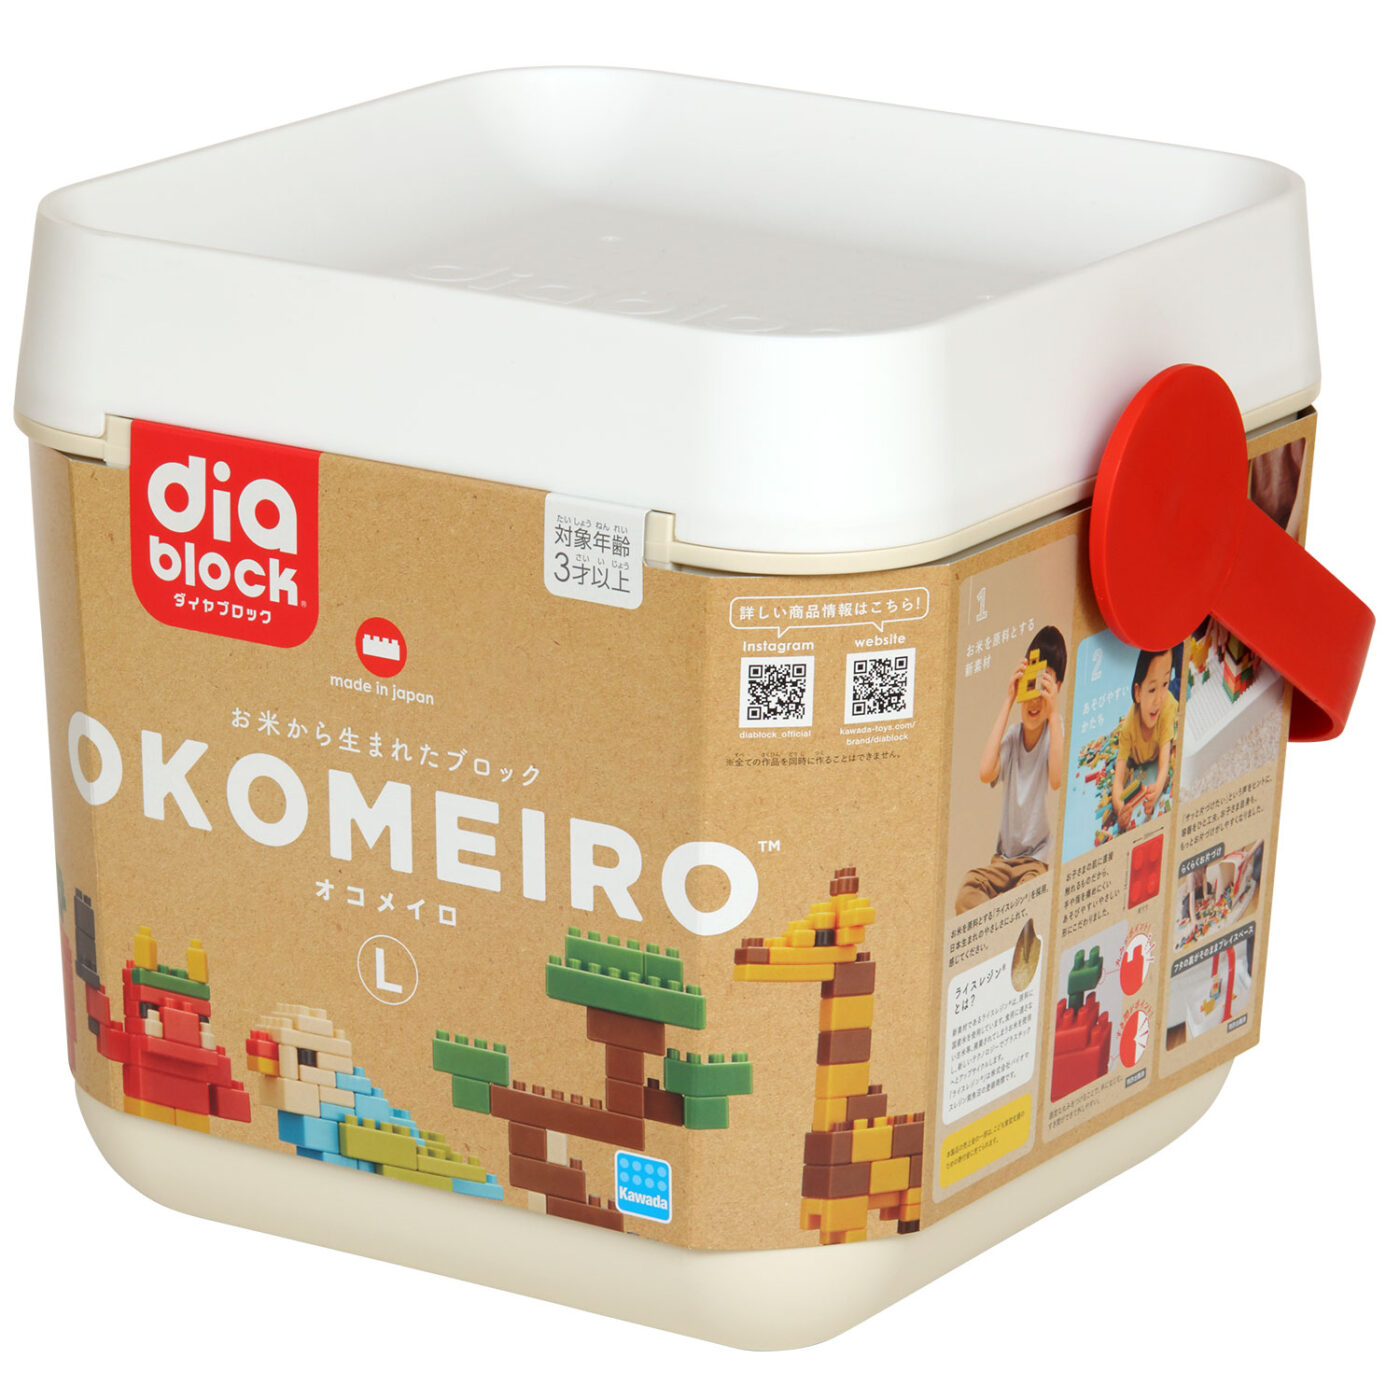 OKOMEIRO Lの商品画像